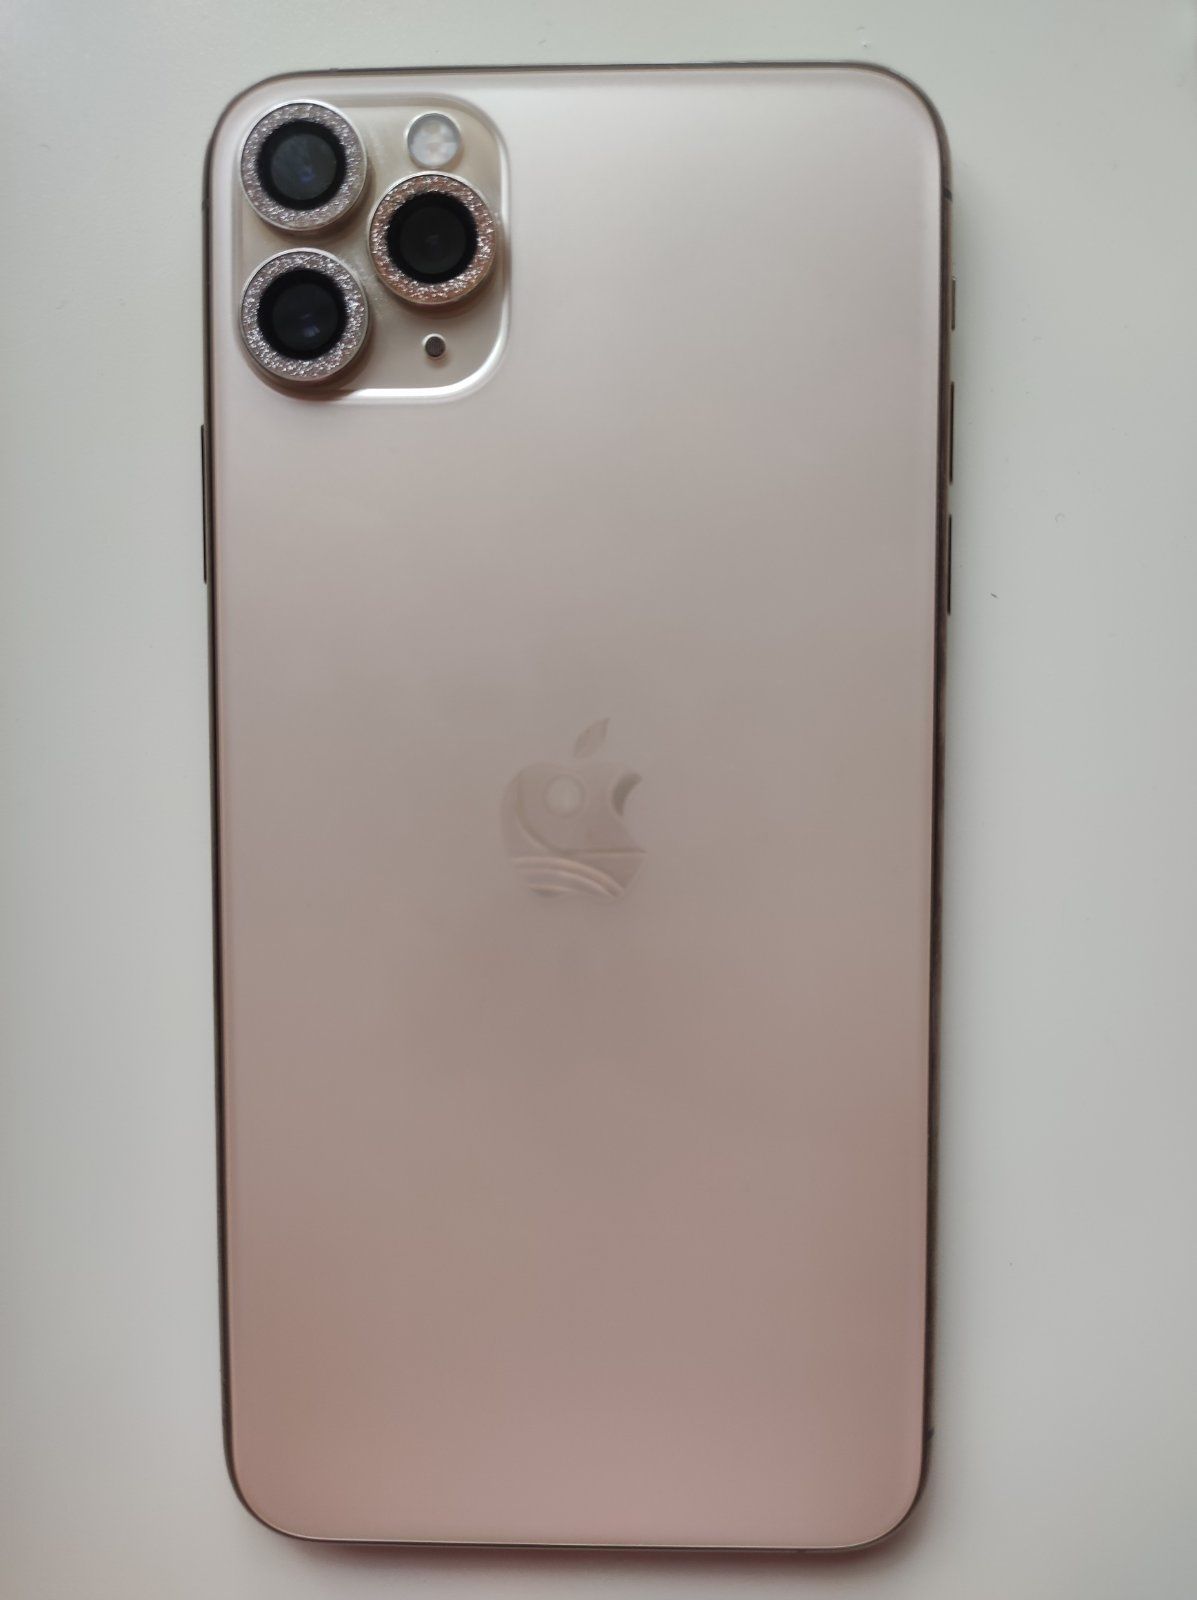 iPhone 11 Pro Max 64GB (Gold) neverlok (Ідеальний стан)
В наявності
А